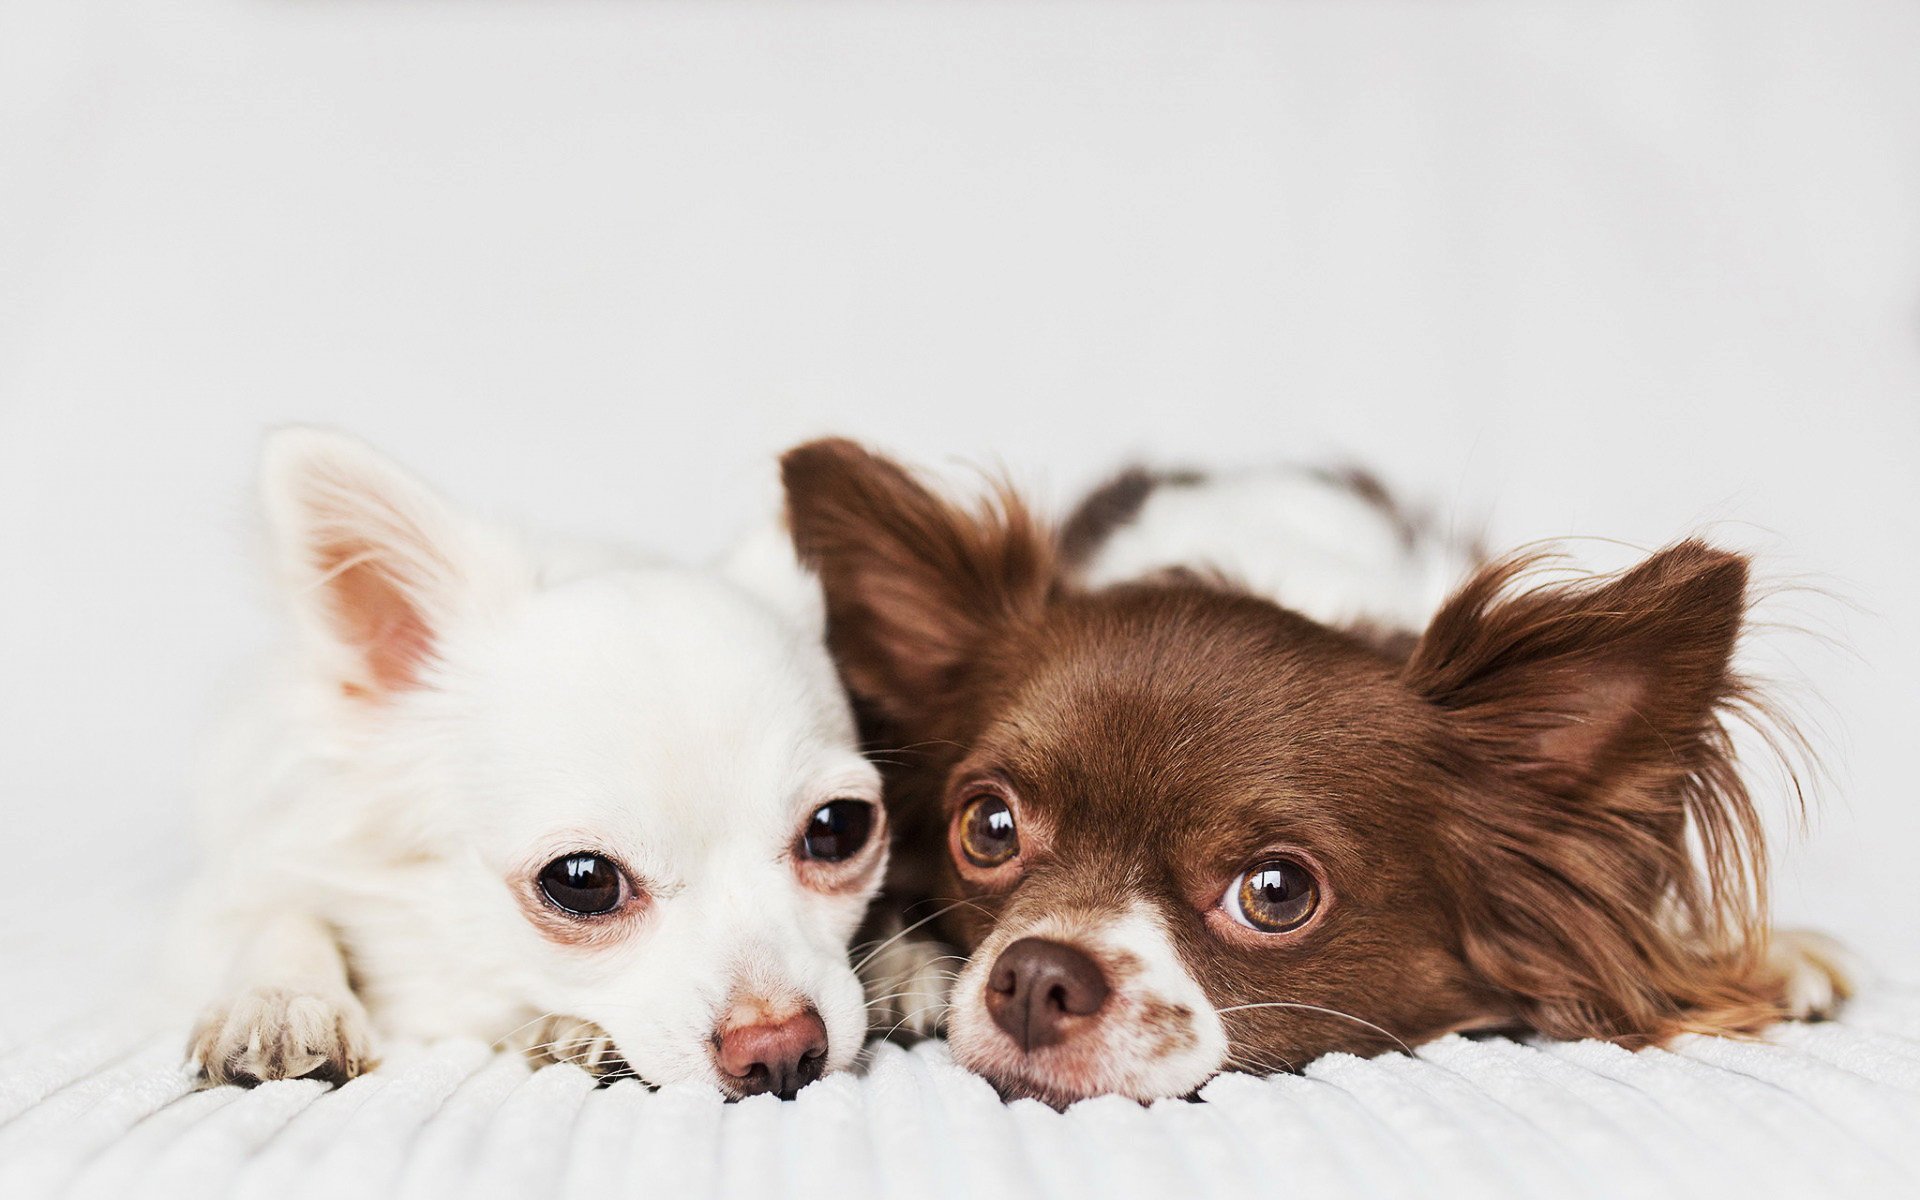 ダウンロード画像 チワワ 家族 犬 ボケ 茶色と白のチワワ 近 かわいい動物たち ペット チワワ犬 画面の解像度 19x10 壁紙デスクトップ上